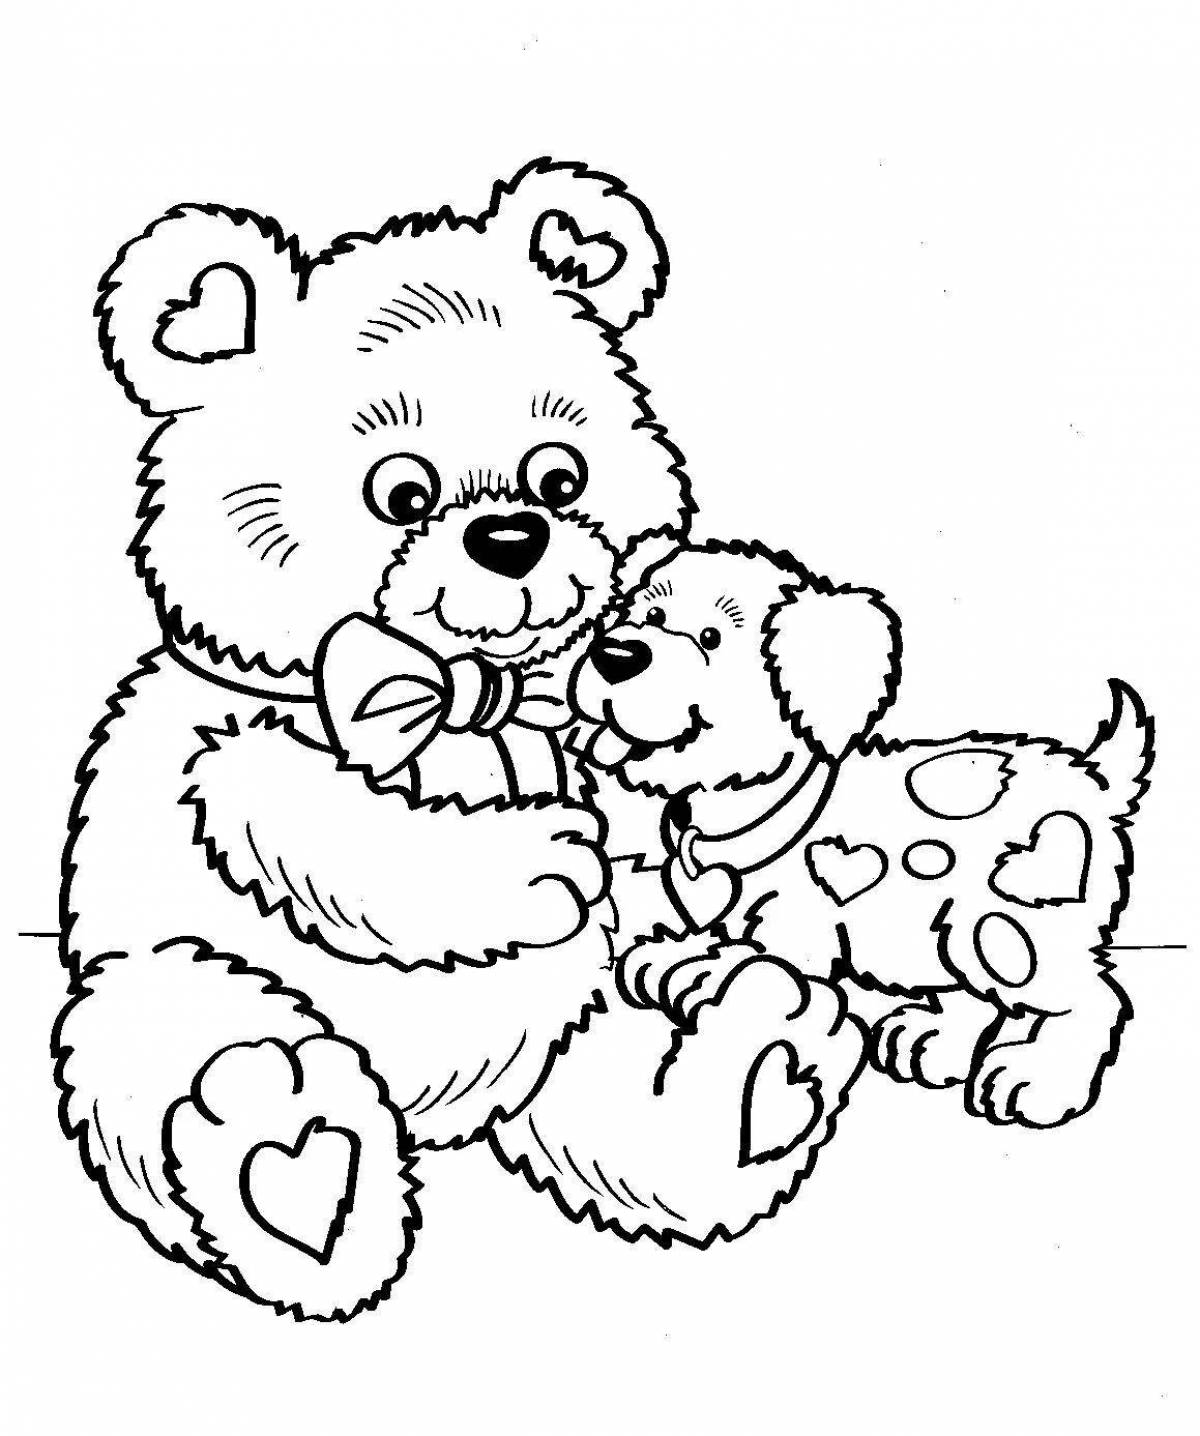 Colouring a fluffy teddy bear